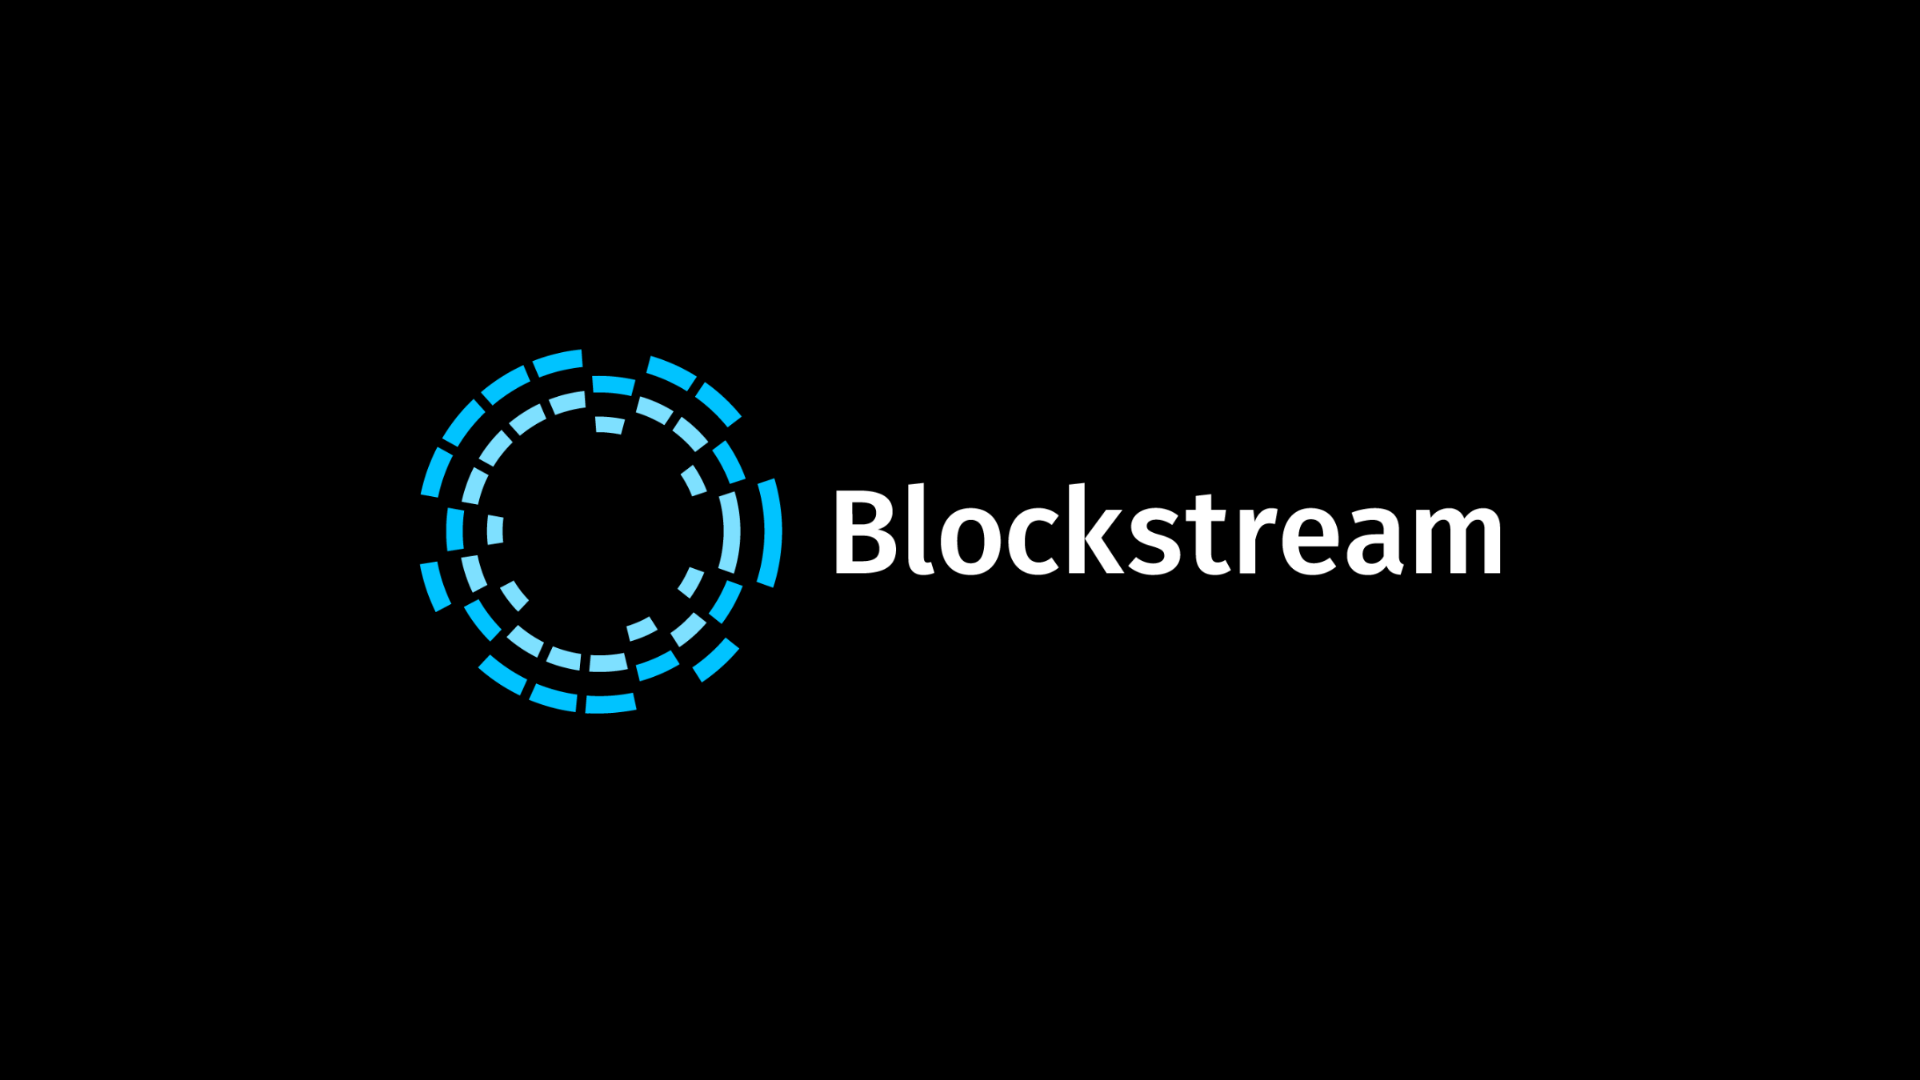 blockstream: bitcoin and digital asset infrastructure